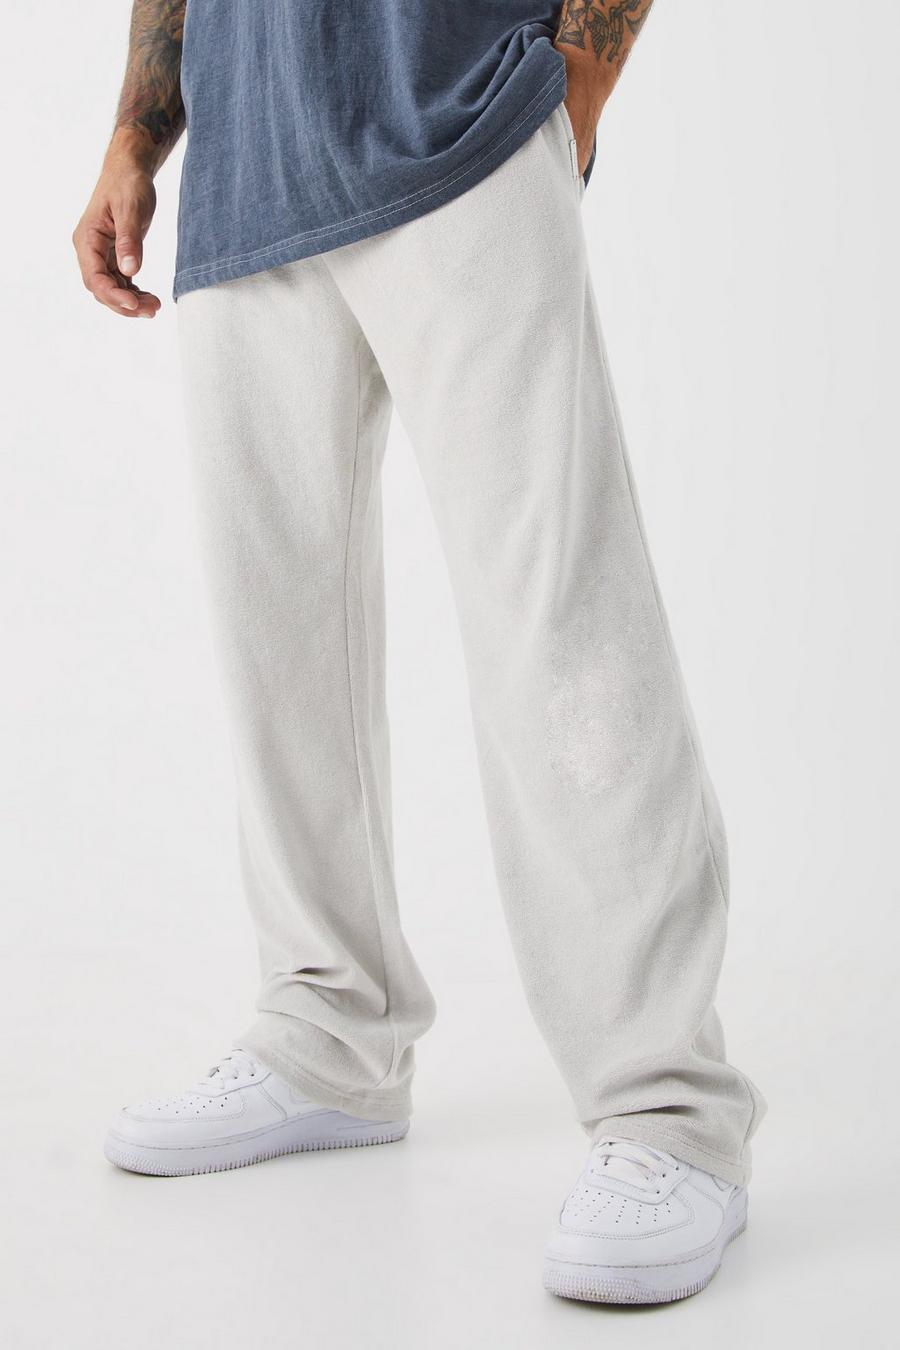 Pantaloni tuta rilassati Premium in spugna, Light grey